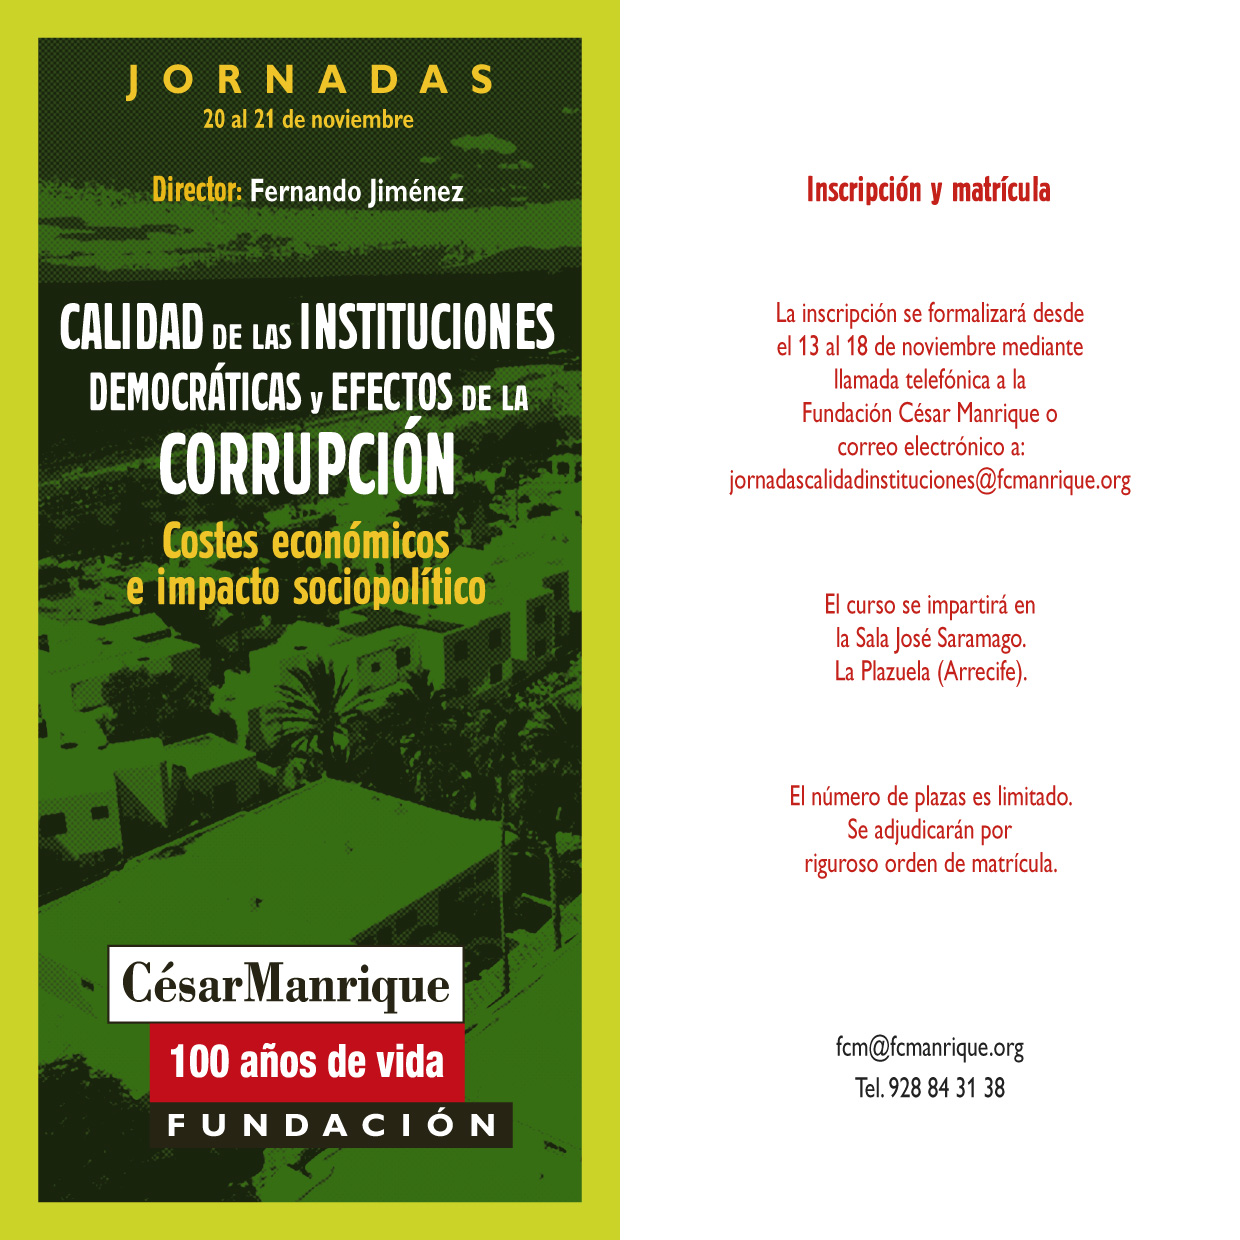 Calidad de las instituciones democráticas y efectos de la corrupción